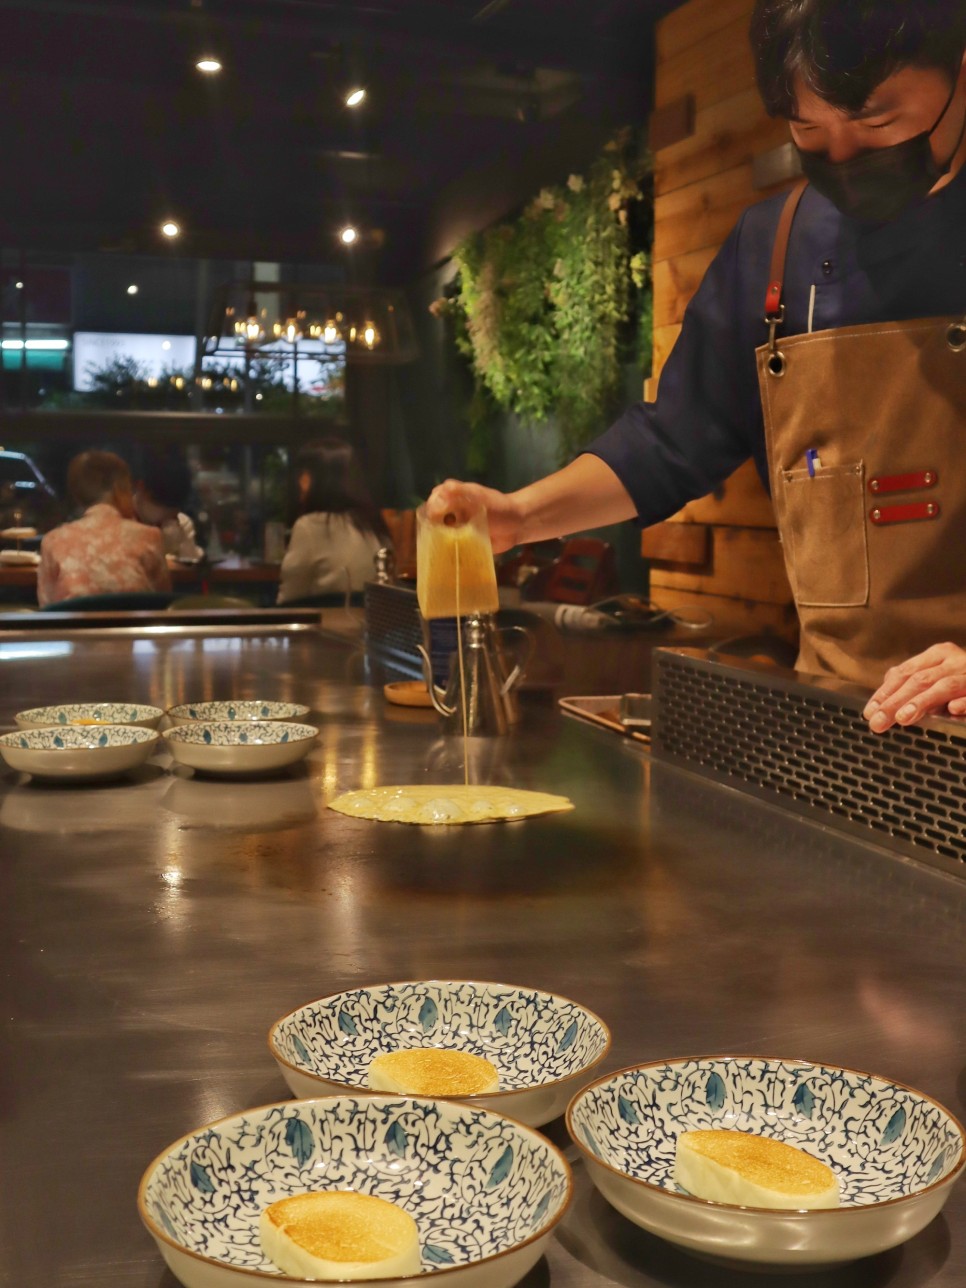 대만 여행 맛집 오마카세 티방슈 6만원대에 즐기는 고급 철판요리 부모님 가족여행 레스토랑 추천